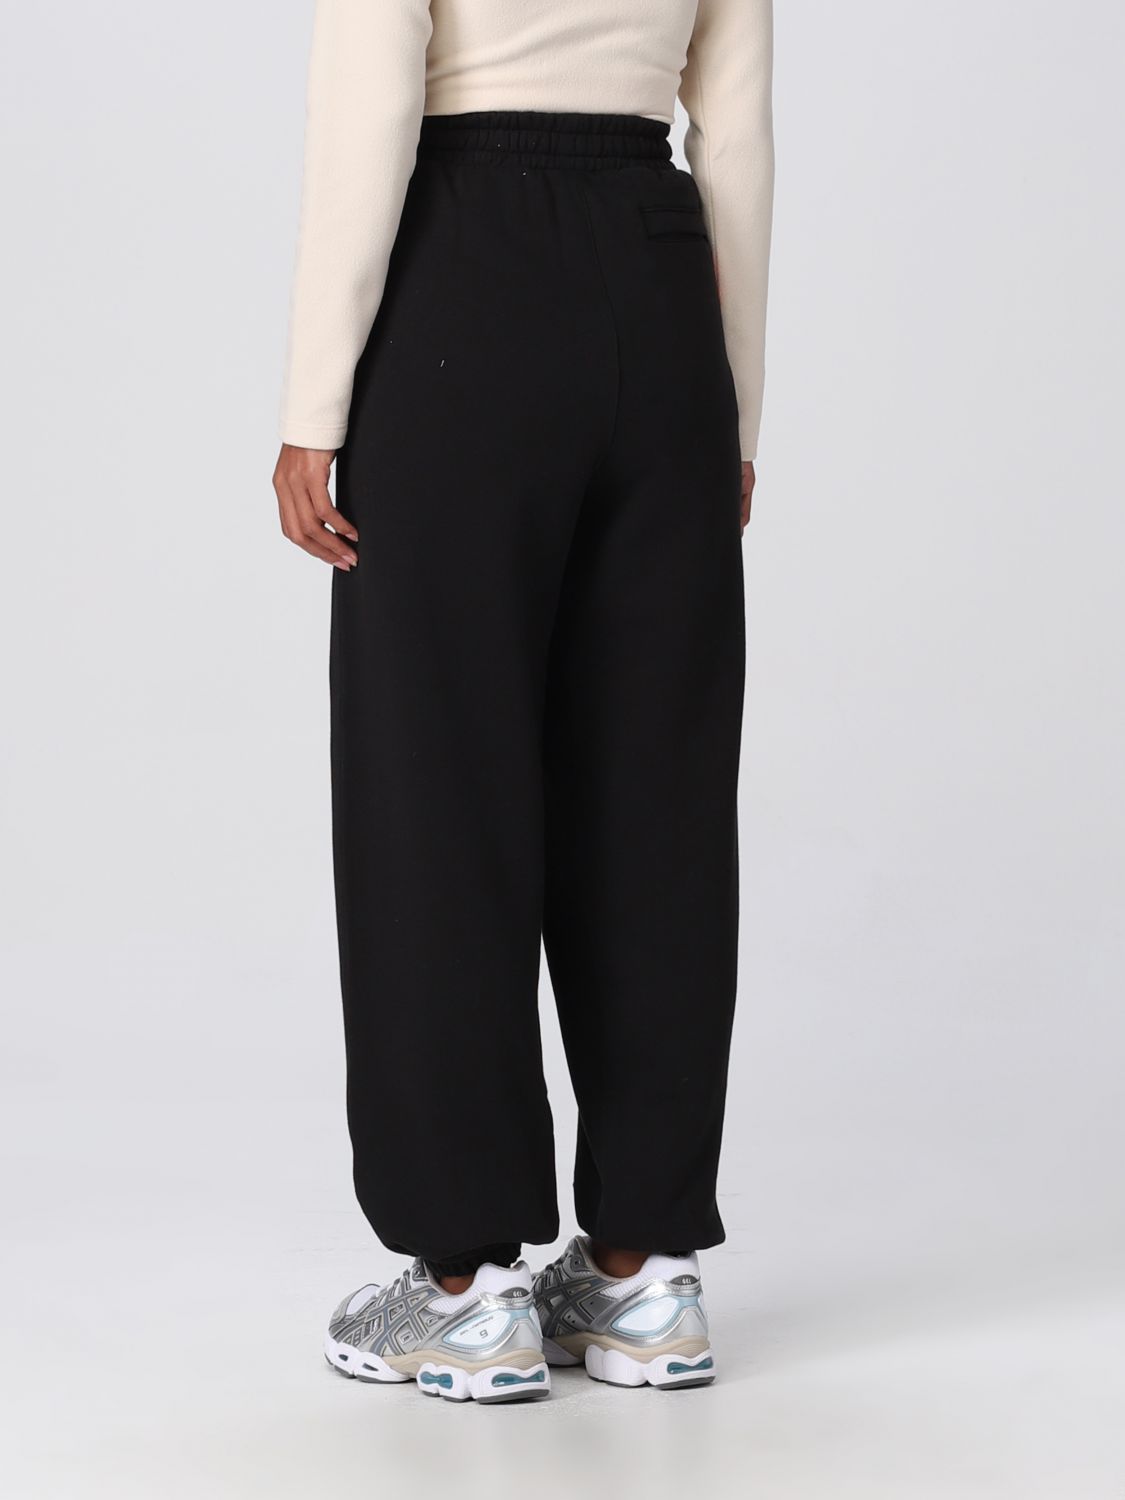 Puma X Vogue Outlet: pants for woman - Black | Puma X Vogue pants ...